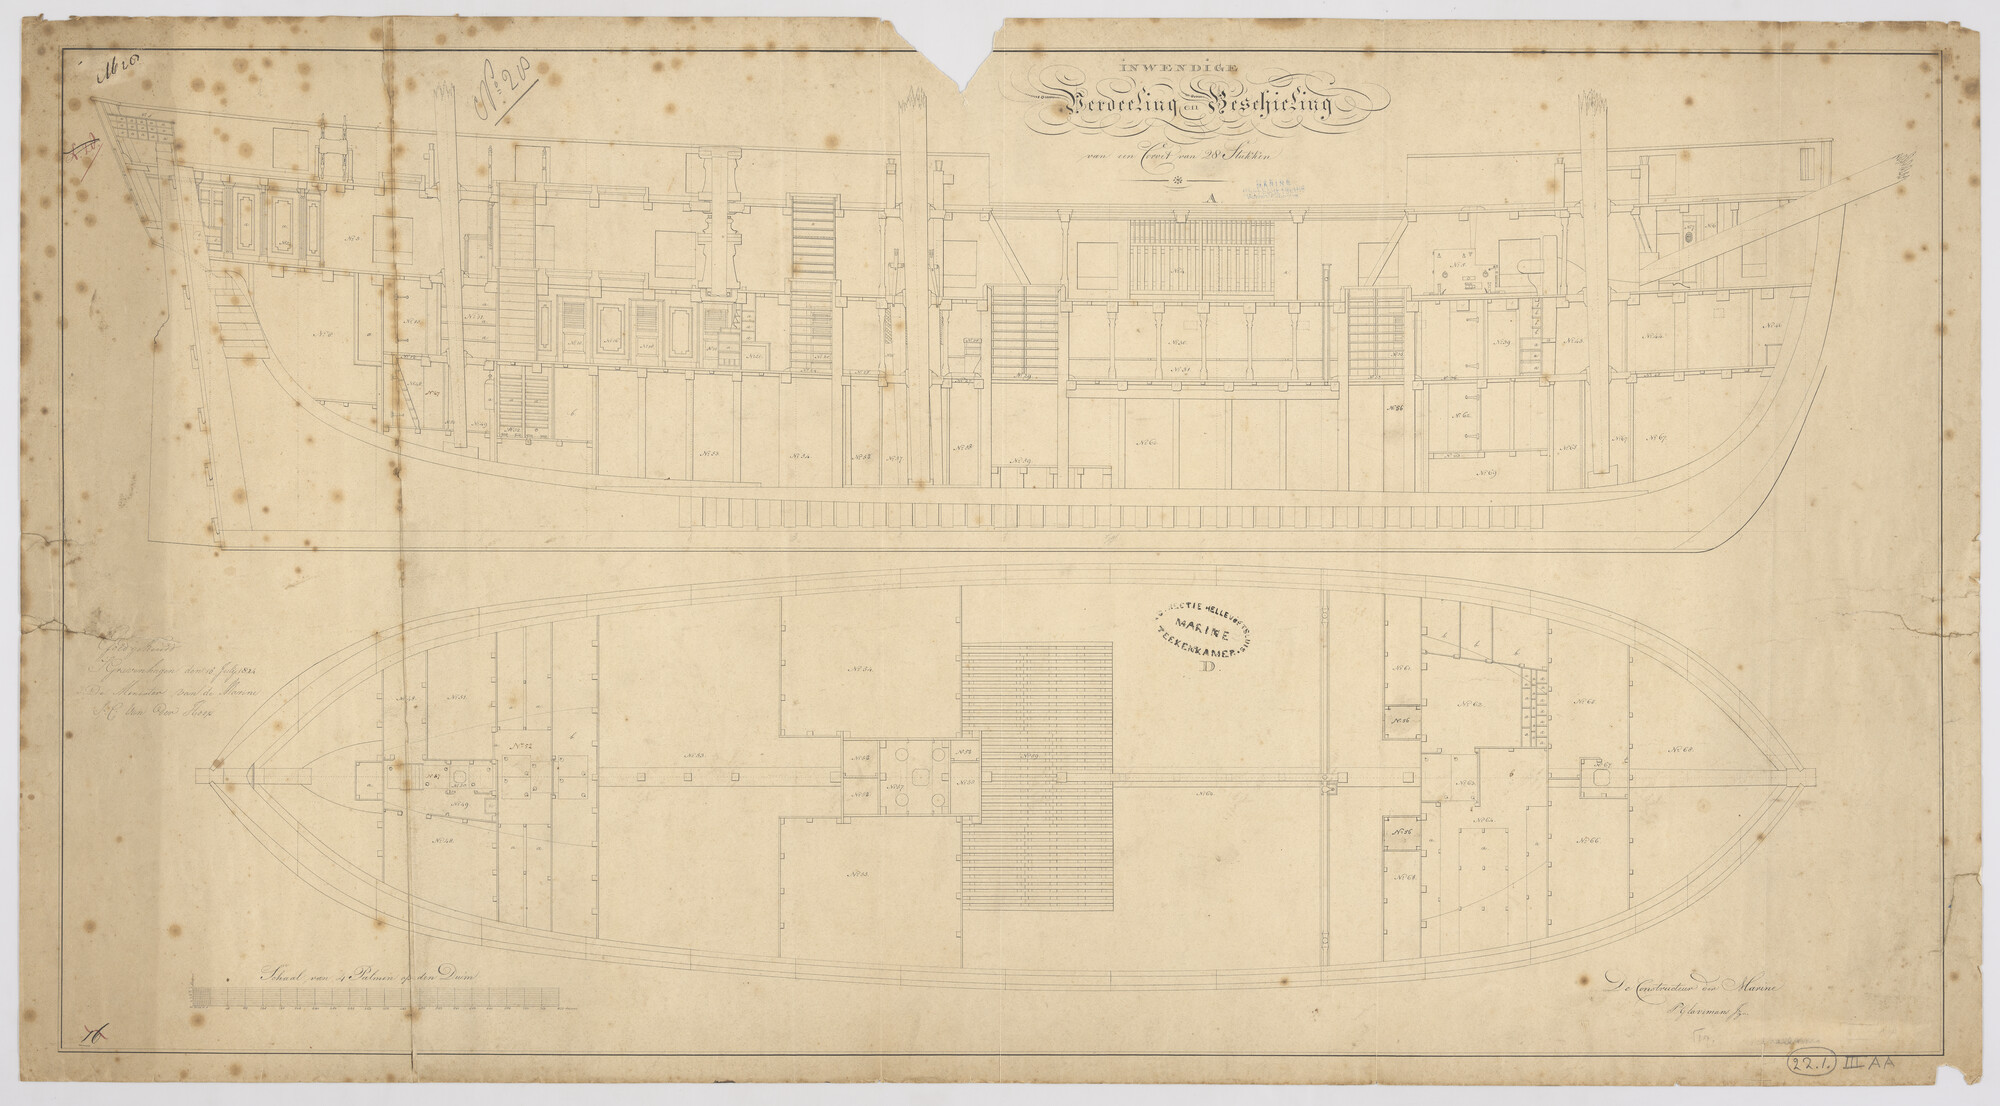 S.1214(0123)a; Indelingsplan van het korvet Zr.Ms. 'Nehalennia' van 28 stukken; technische tekening